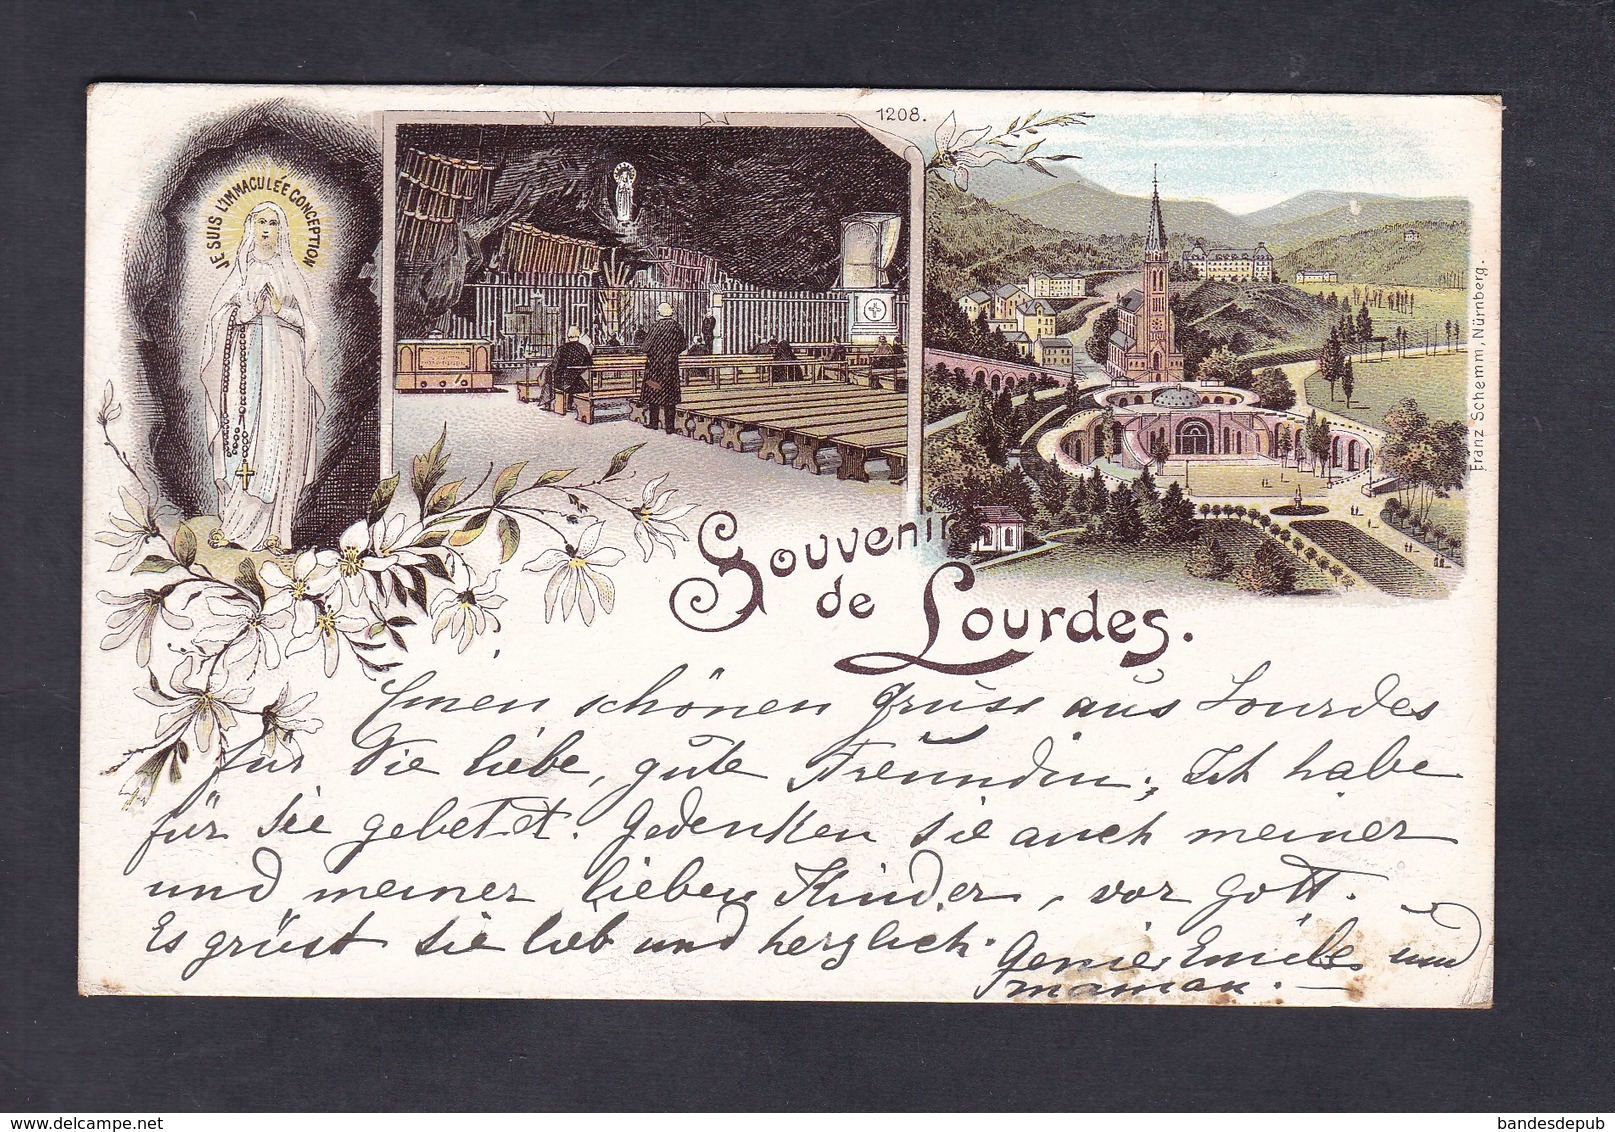 Vente Immediate Souvenir De Lourdes ( Multivues Chromo Lithographie Franz Schemm Nürnberg) - Lourdes